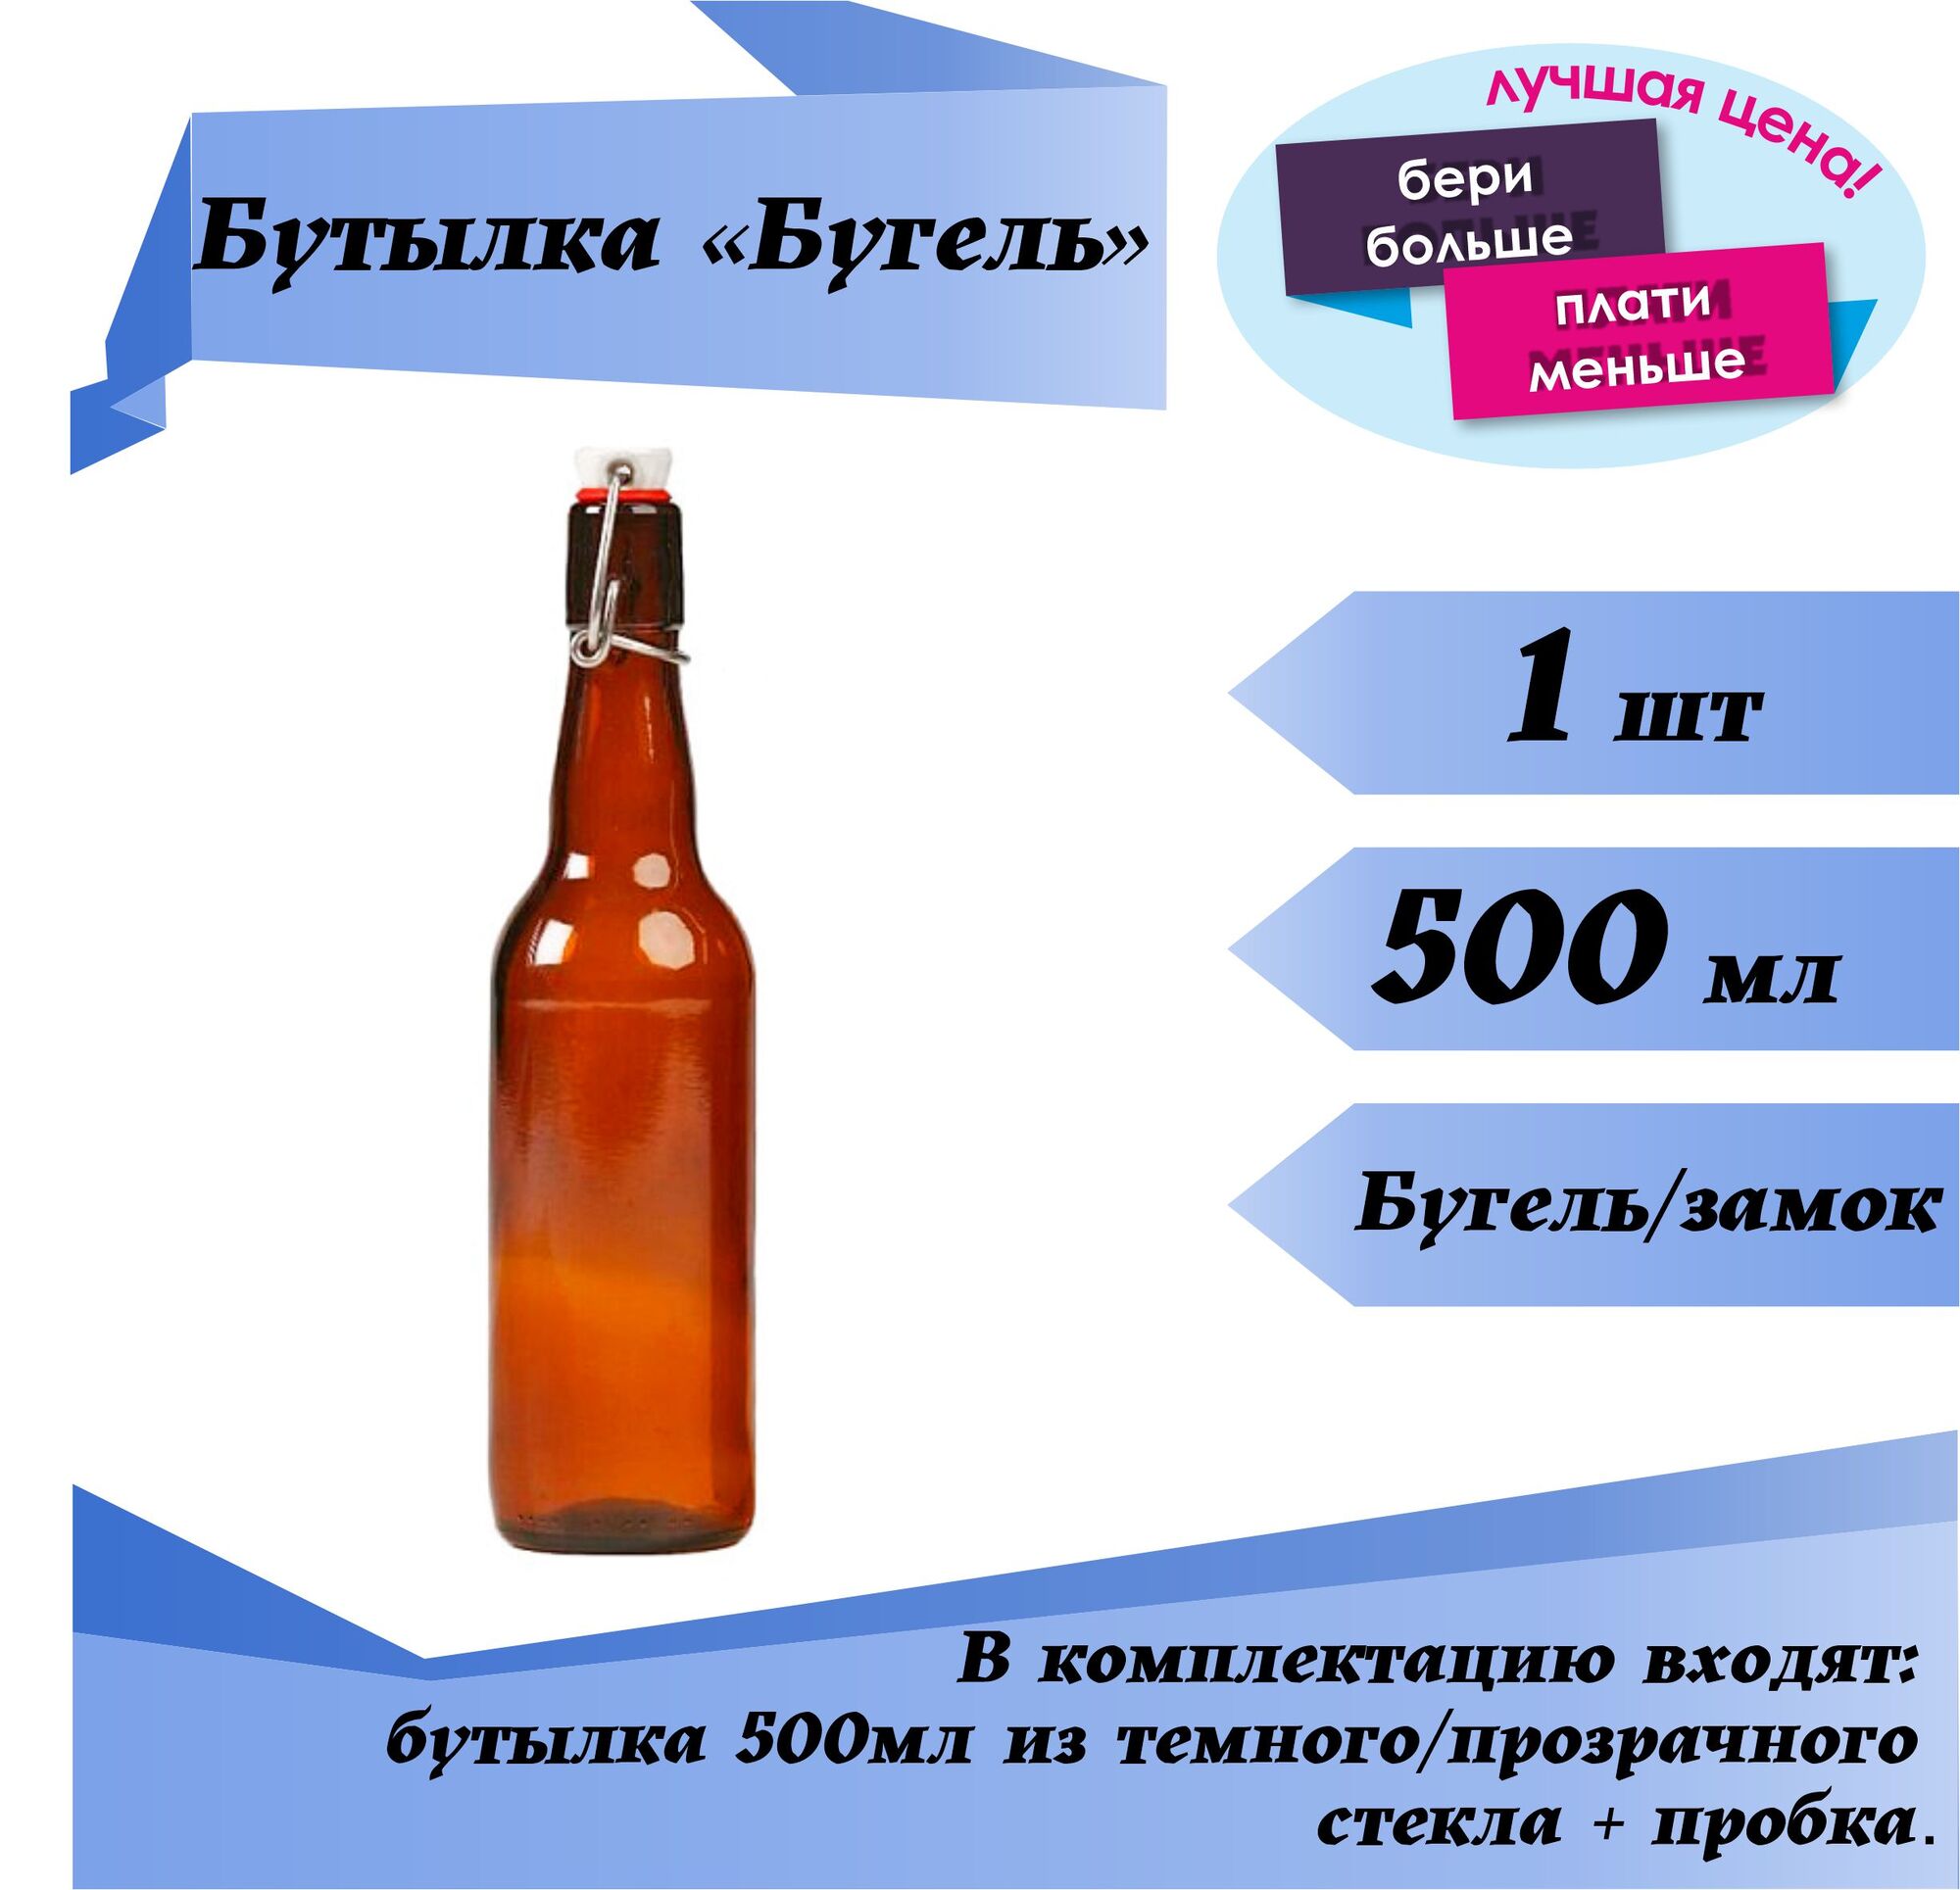 Бутылка 500мл бугель/замок (темное/прозрачное стекло)